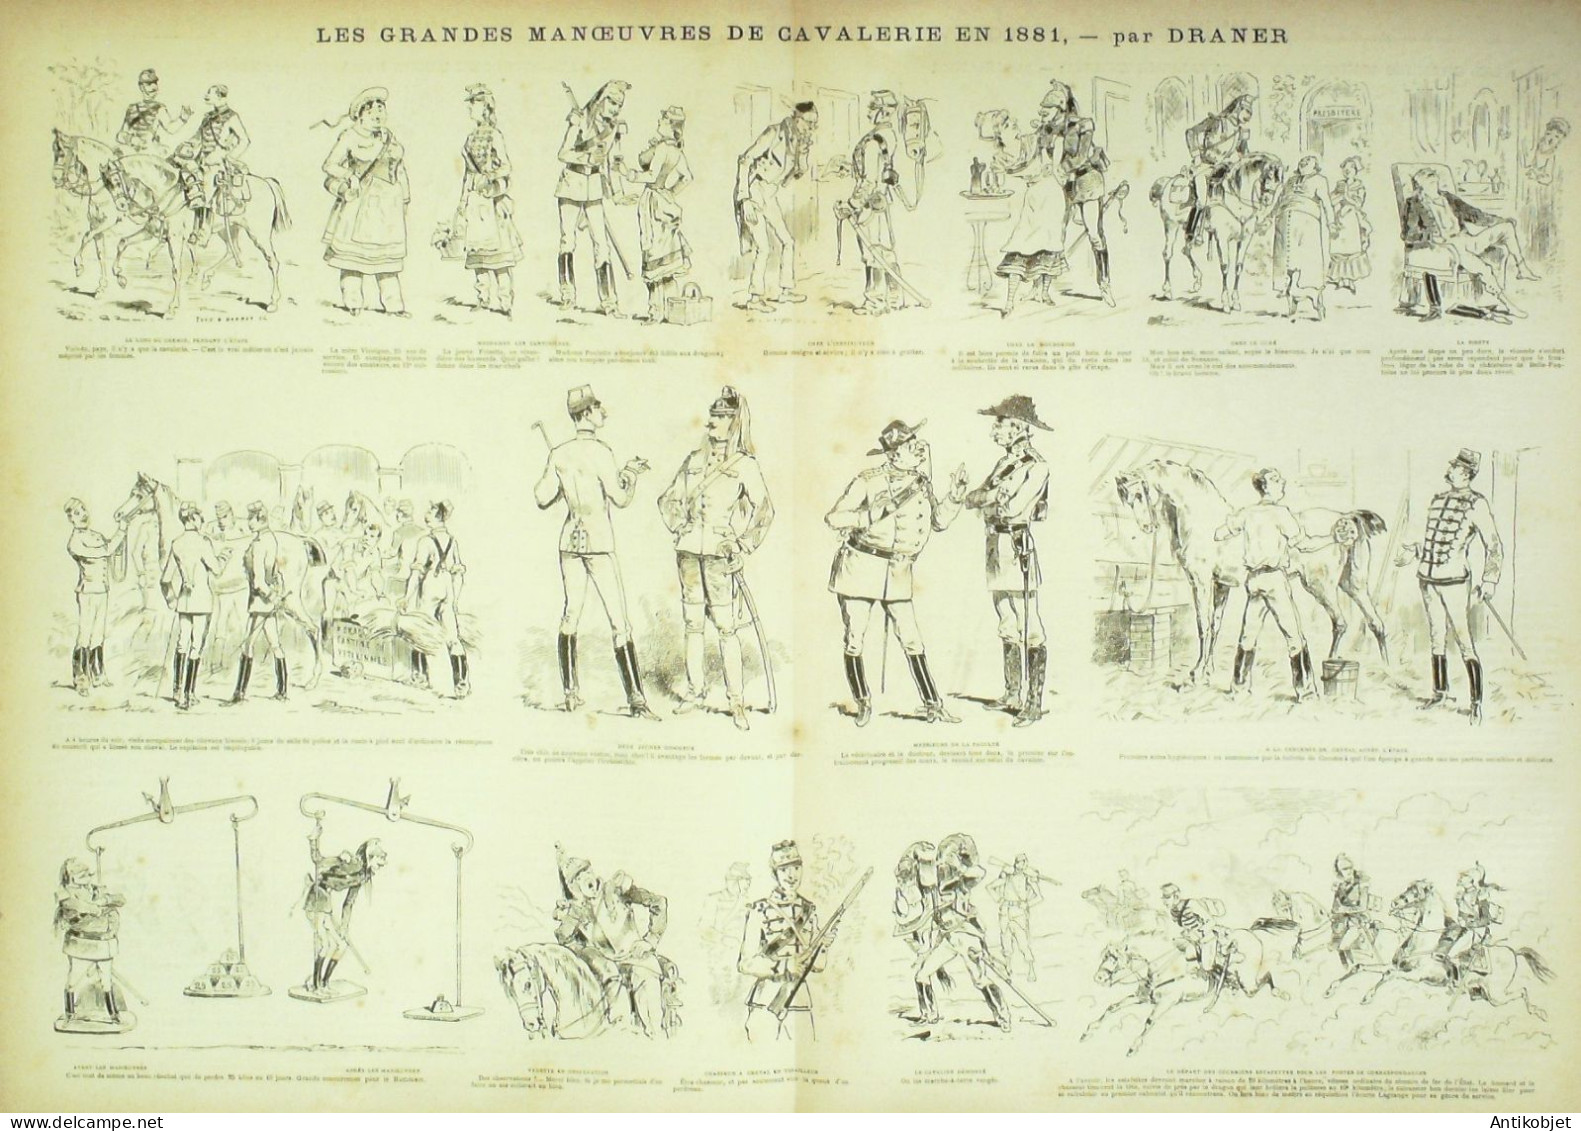 La Caricature 1881 N°  87 Manoeuvres De Cavalerie Barret Draner TROCK - Zeitschriften - Vor 1900